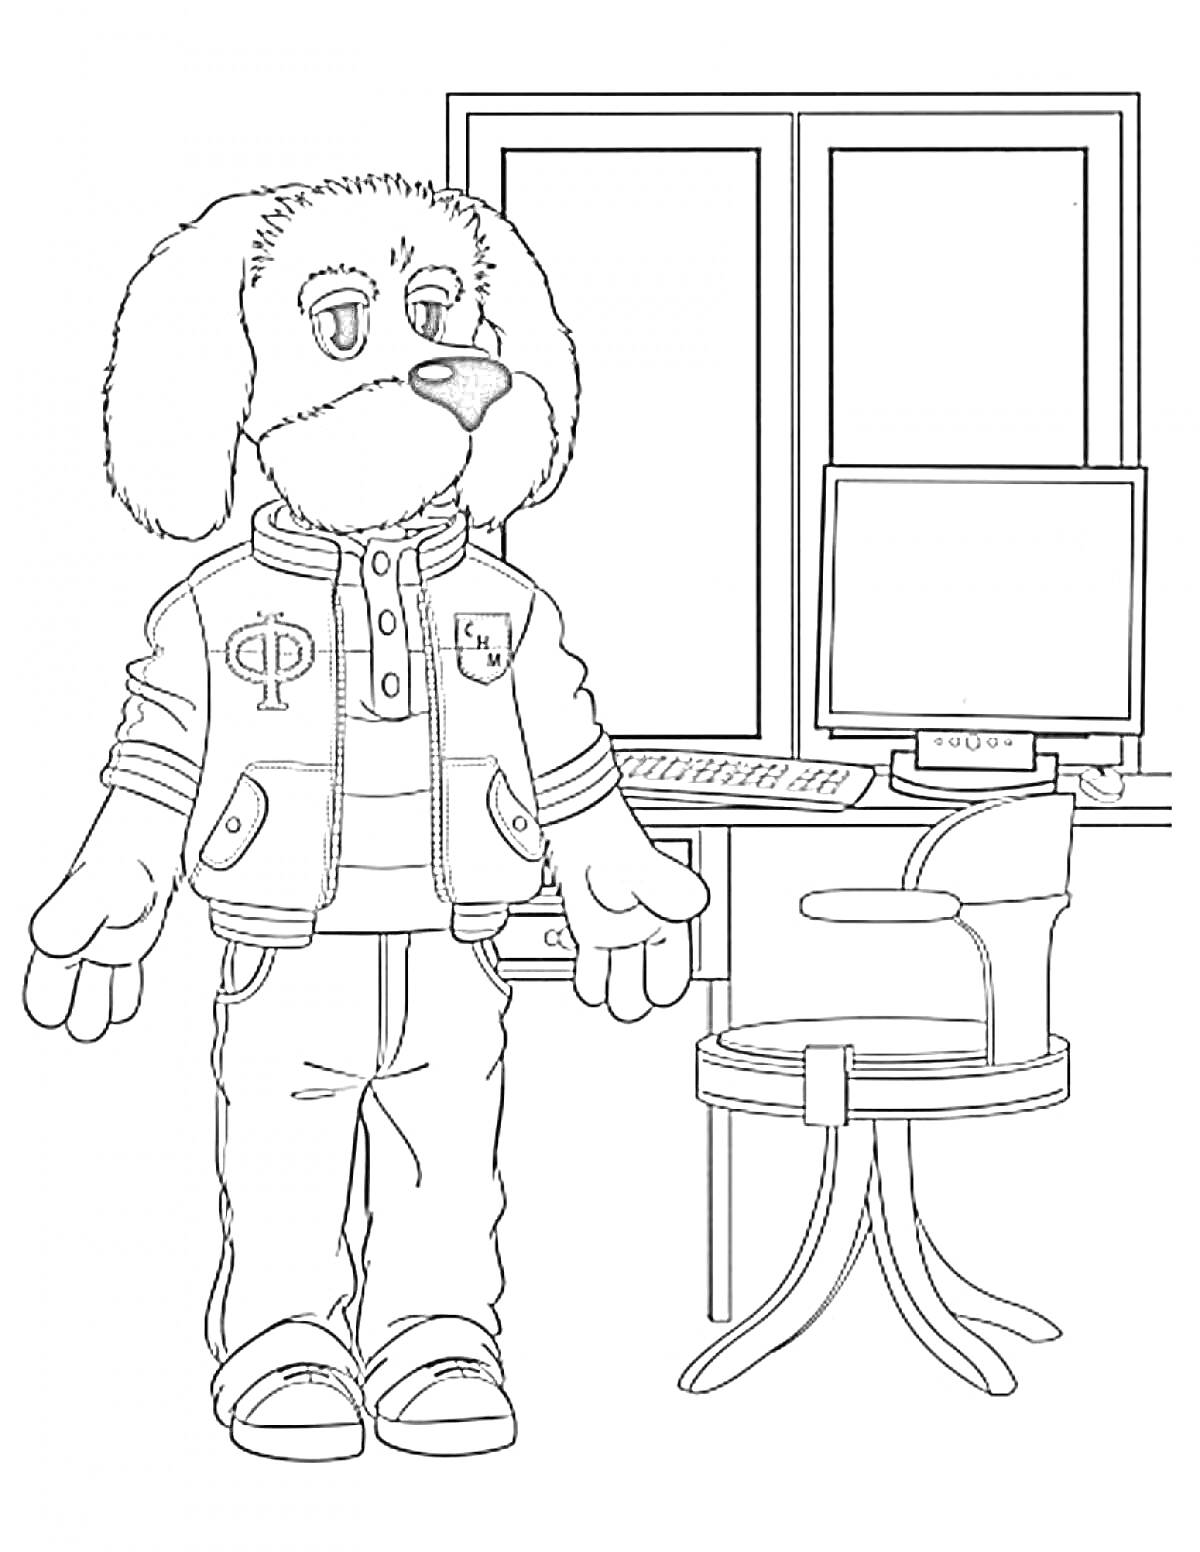 Собачка в свитере и куртке стоит у стола с монитором и стулом, окно на заднем плане.